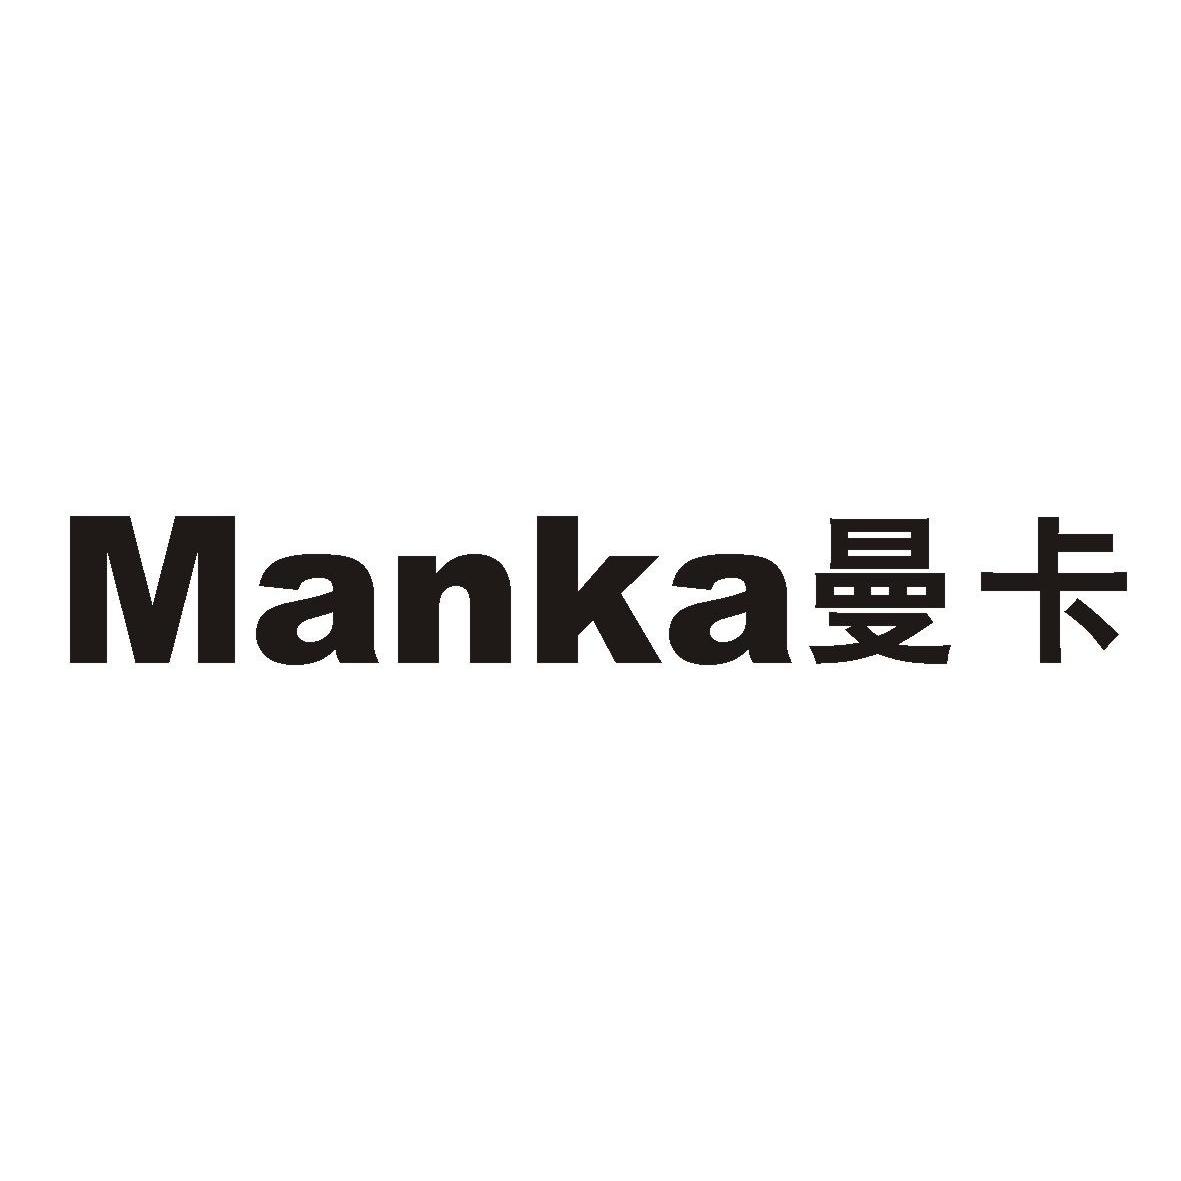 曼卡已注册申请号:13201258申请日期:2013-09-06商标